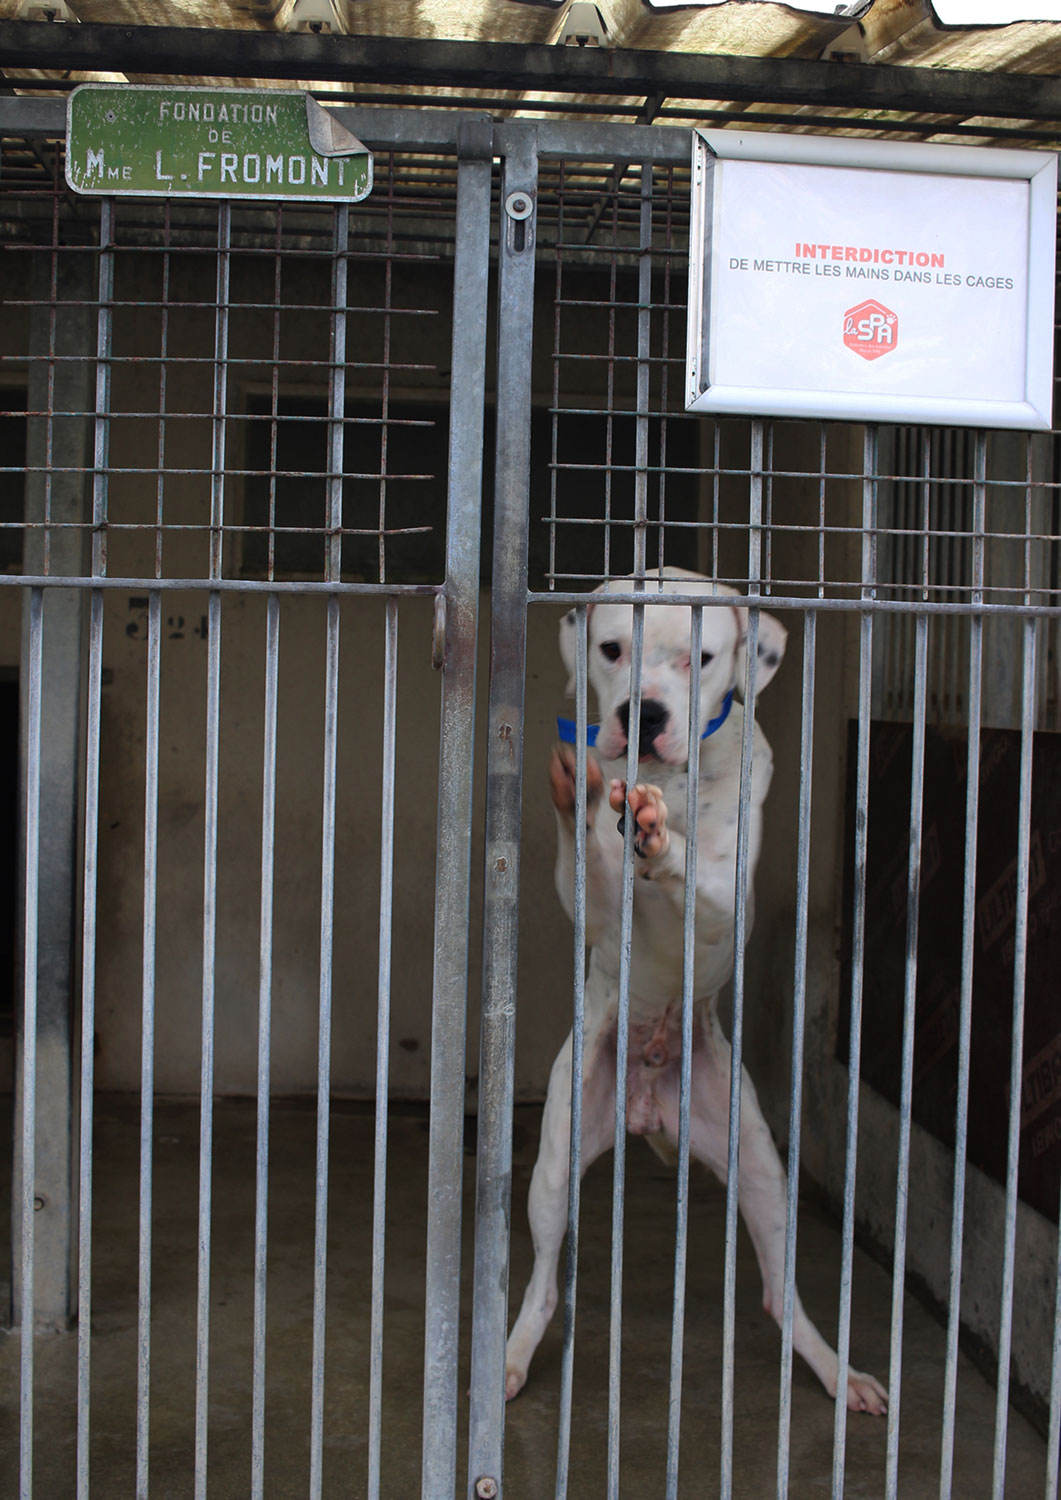 Carole conseille toutefois à Chloé de ne pas s’attarder trop longtemps devant les cages pour ne pas irriter les chiens qui se trouvent dans les cages © Globe Reporters